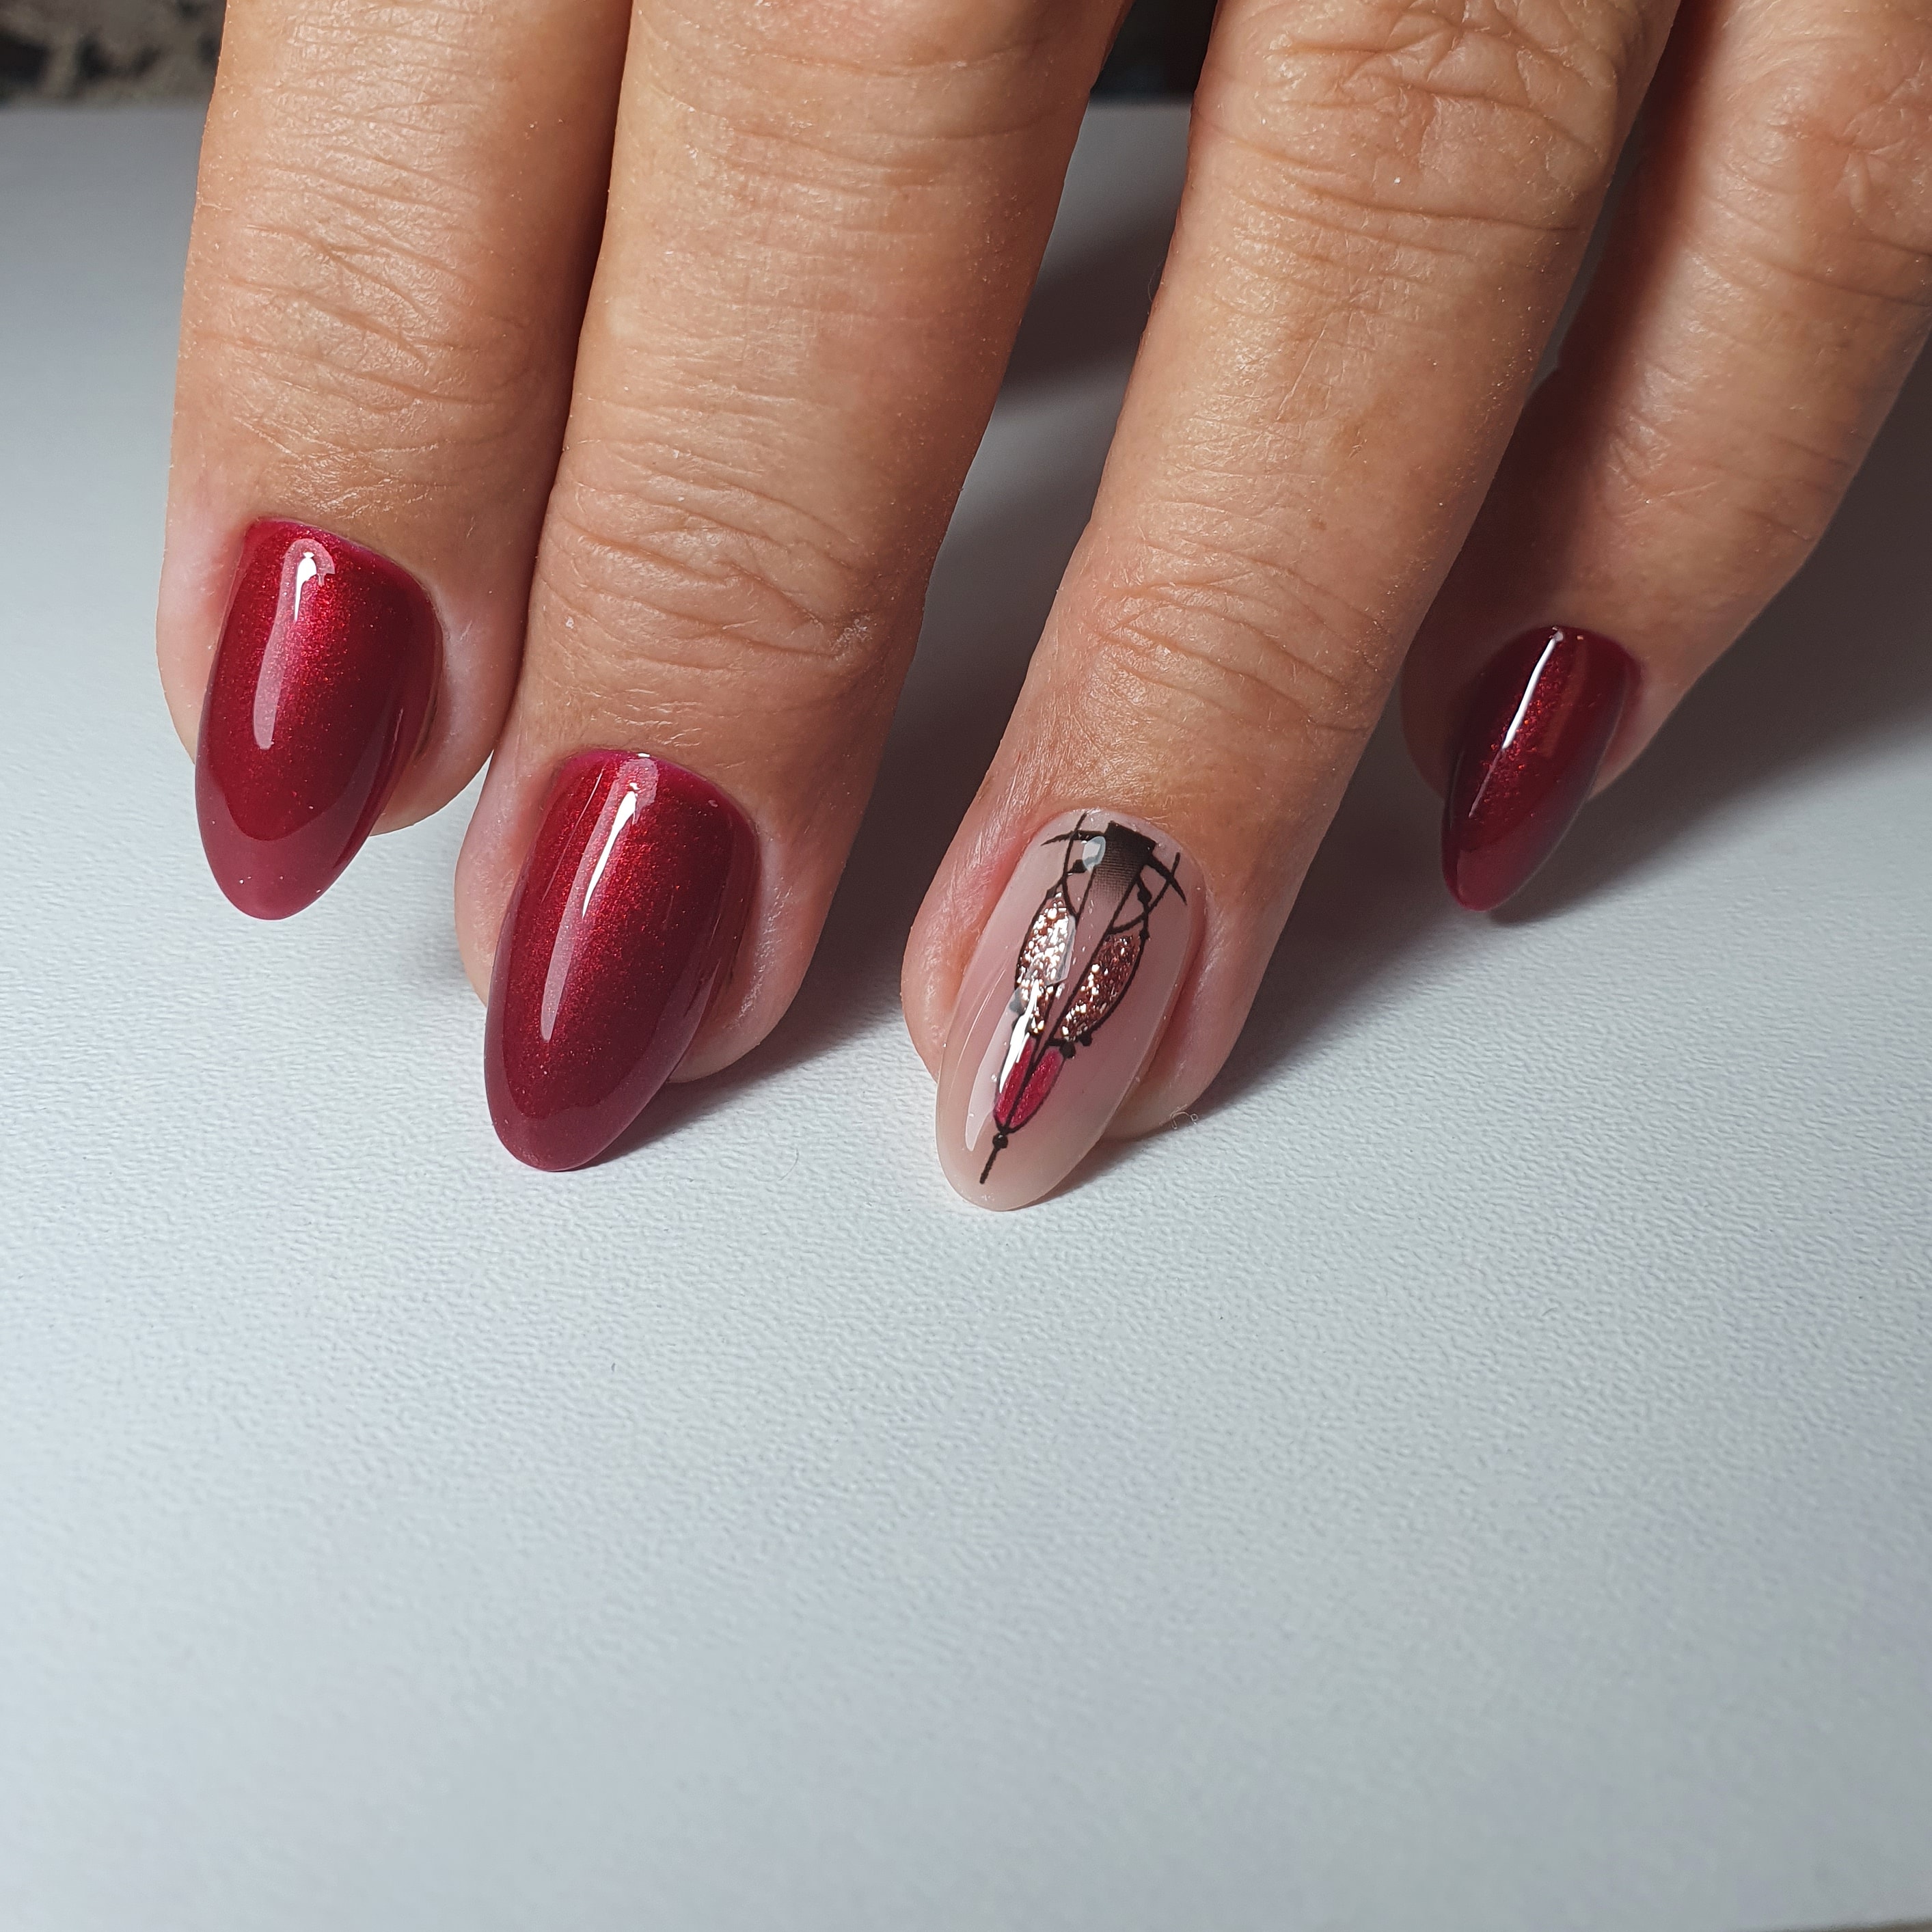 Маникюр с геометрическим слайдером в темно-красном цвете на короткие ногти.